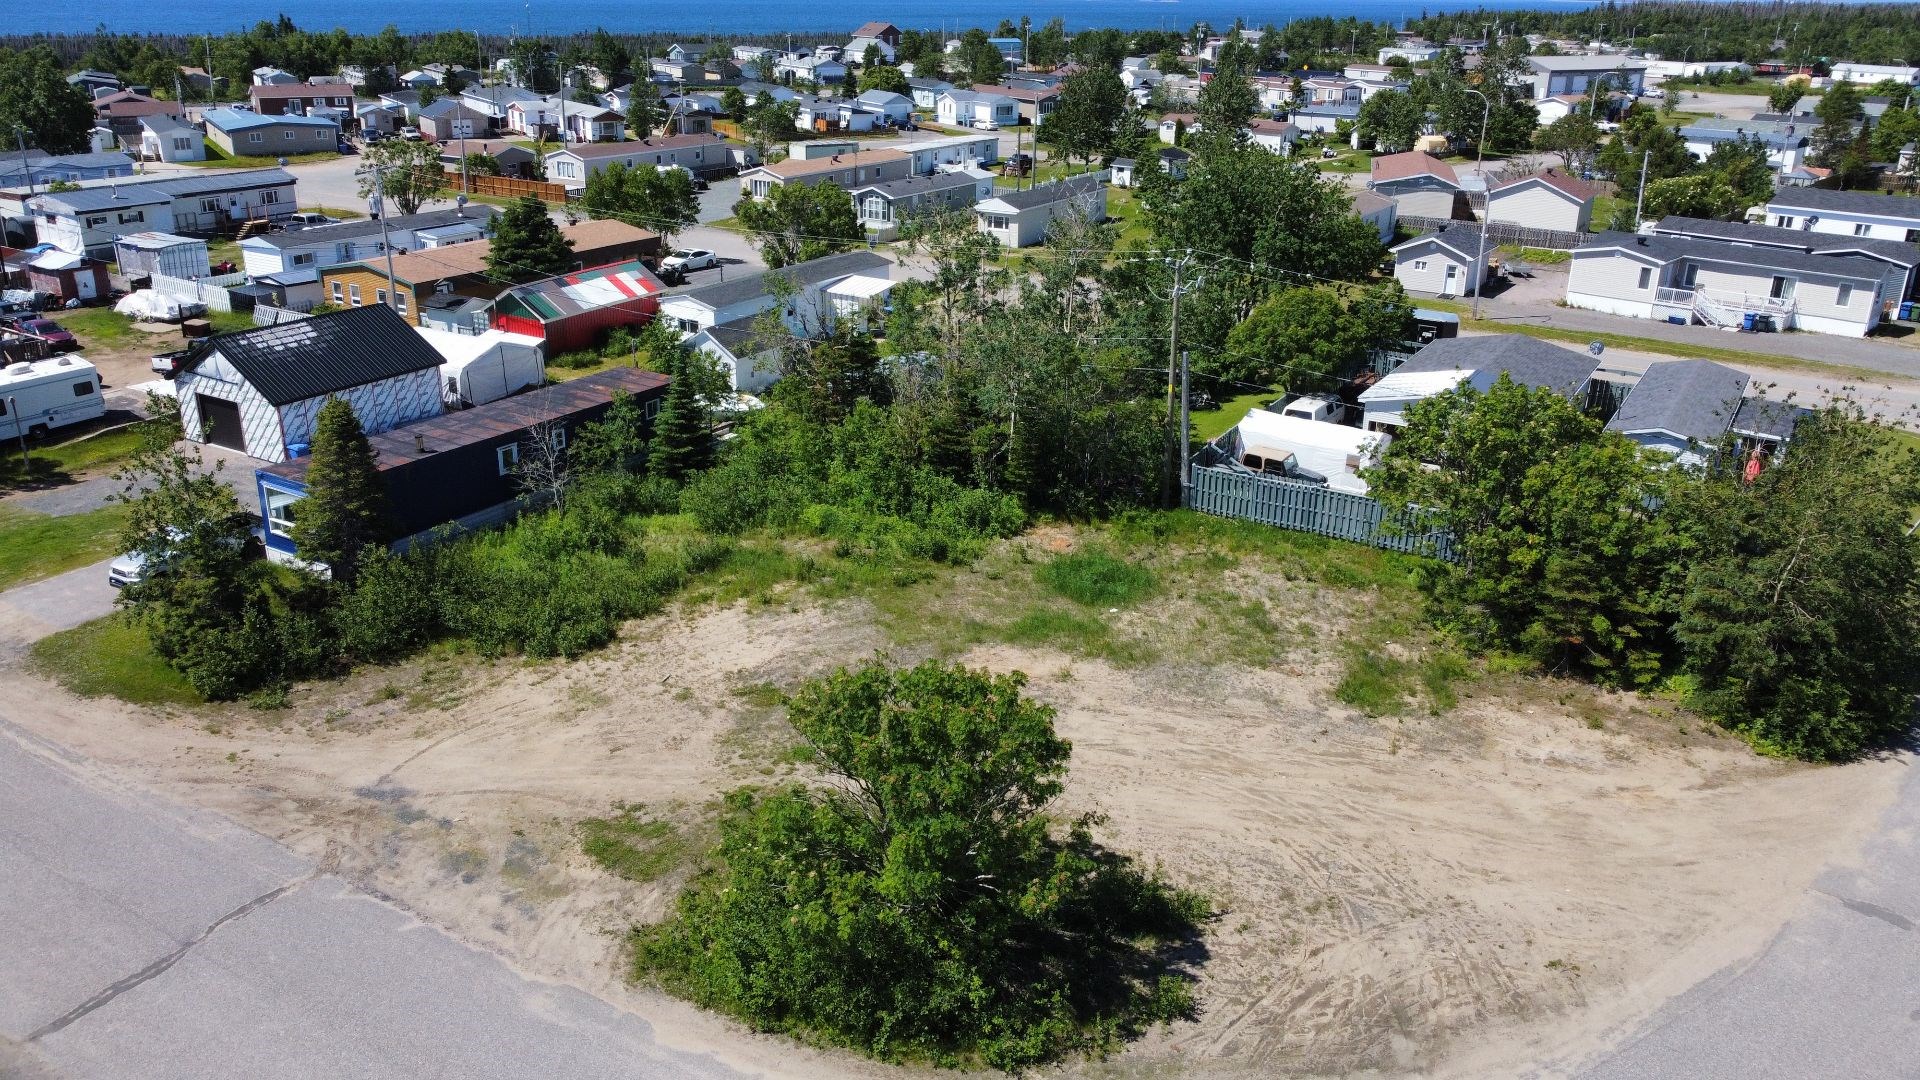 Terrain vacant à vendre, Sept-Îles